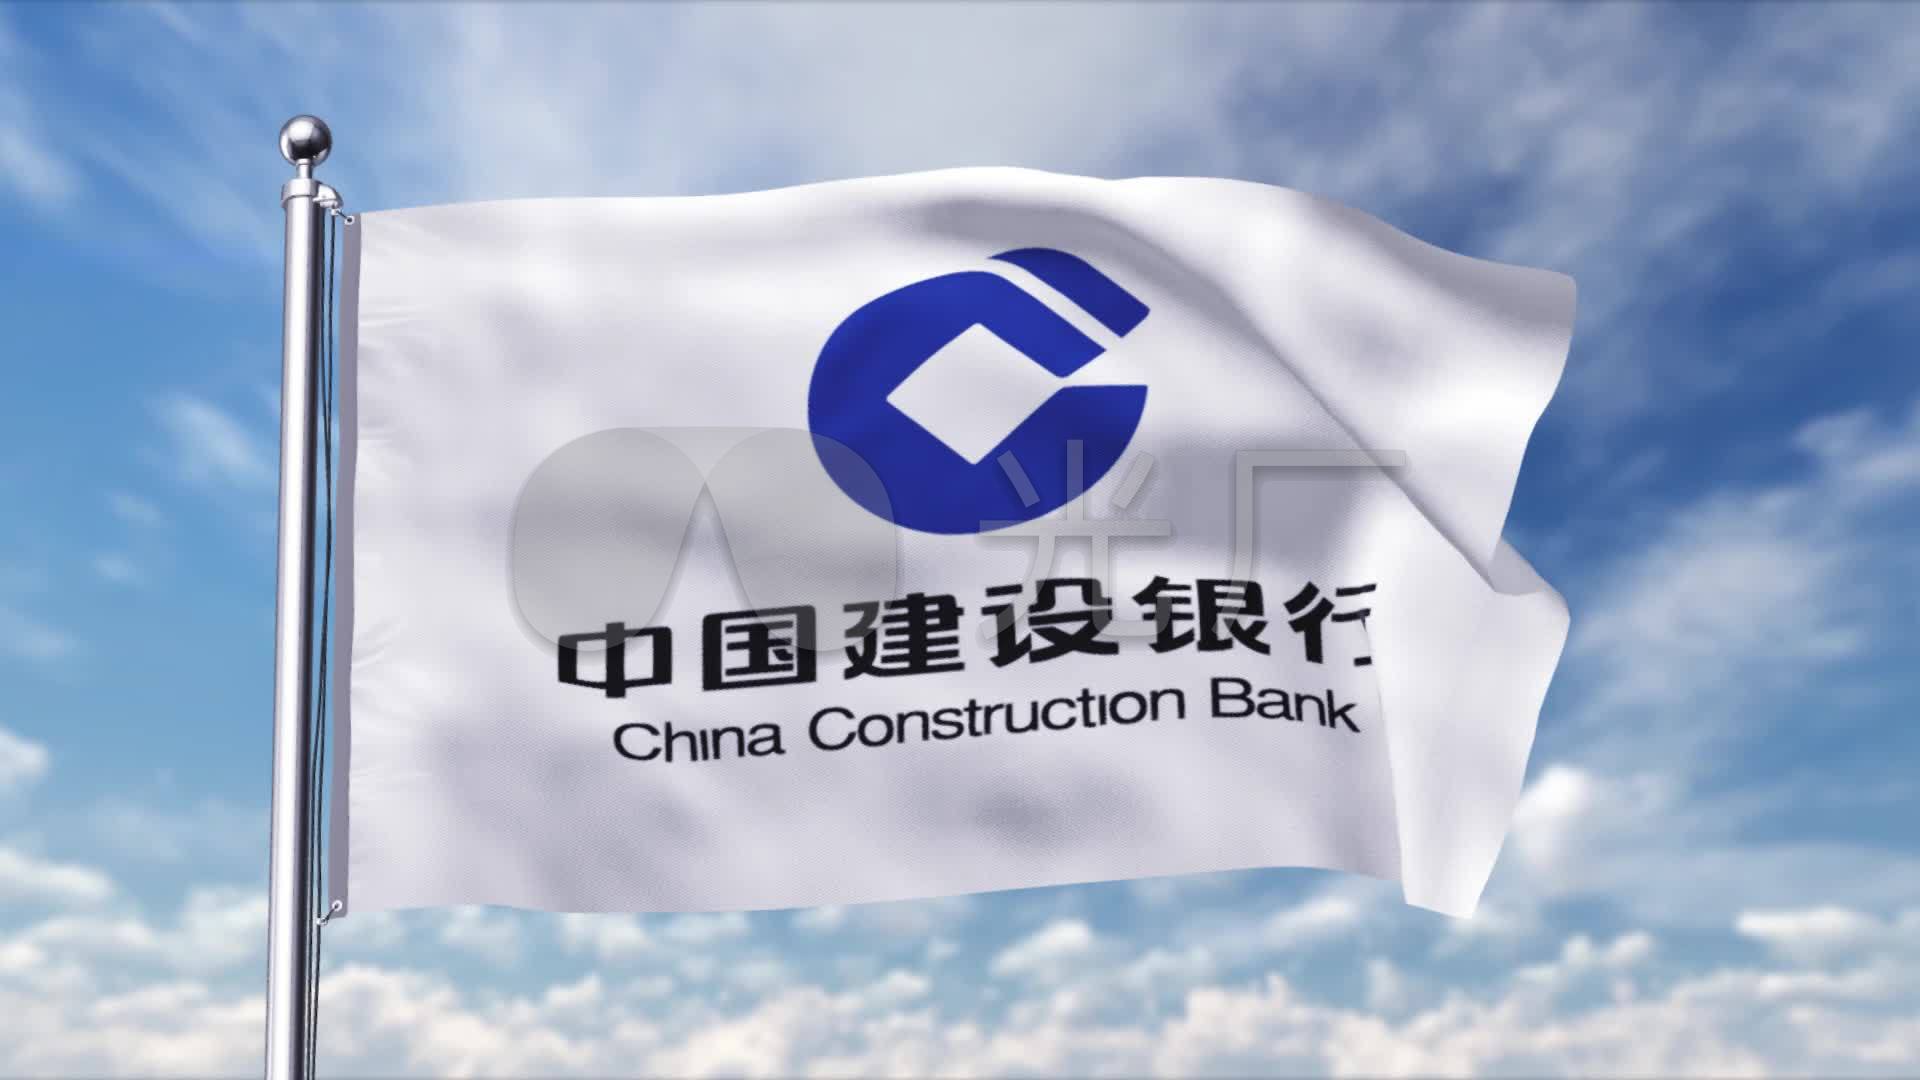 蓝天下中国建设银行的logo旗帜飘扬_1920x1080_高清